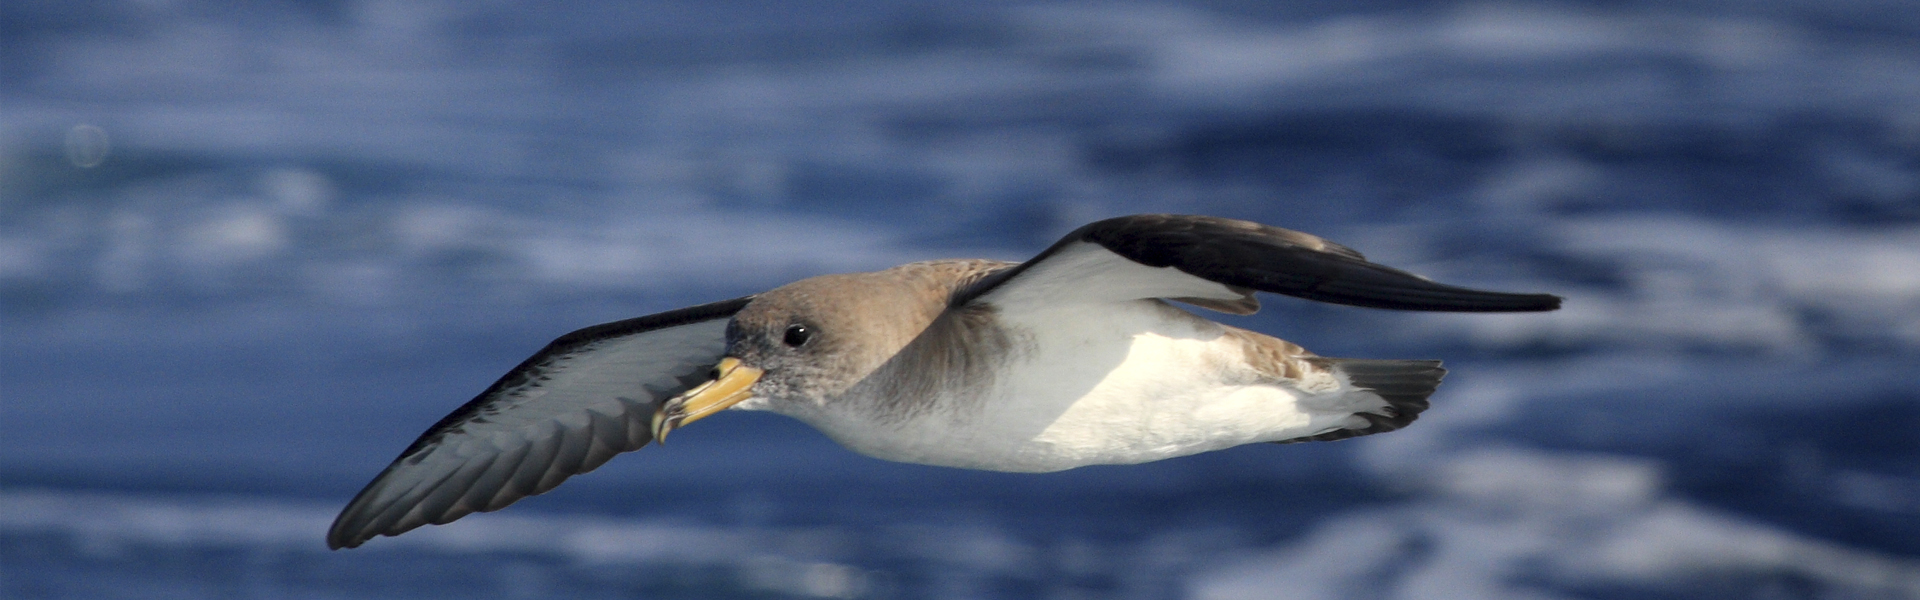 New report: EU countries failing to protect seabirds